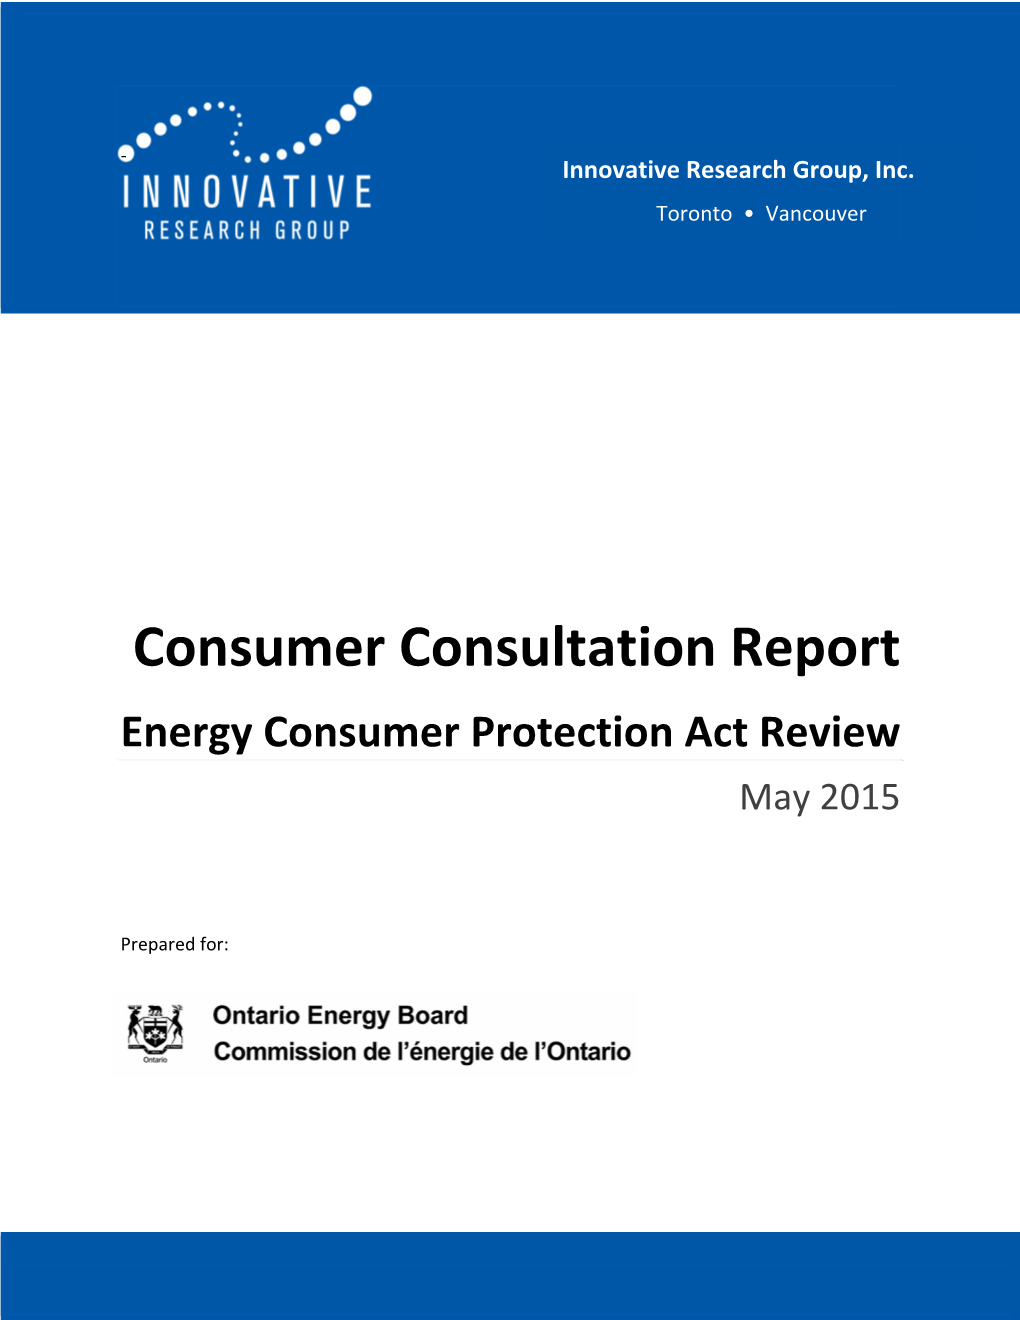 ECPA Review May 2015